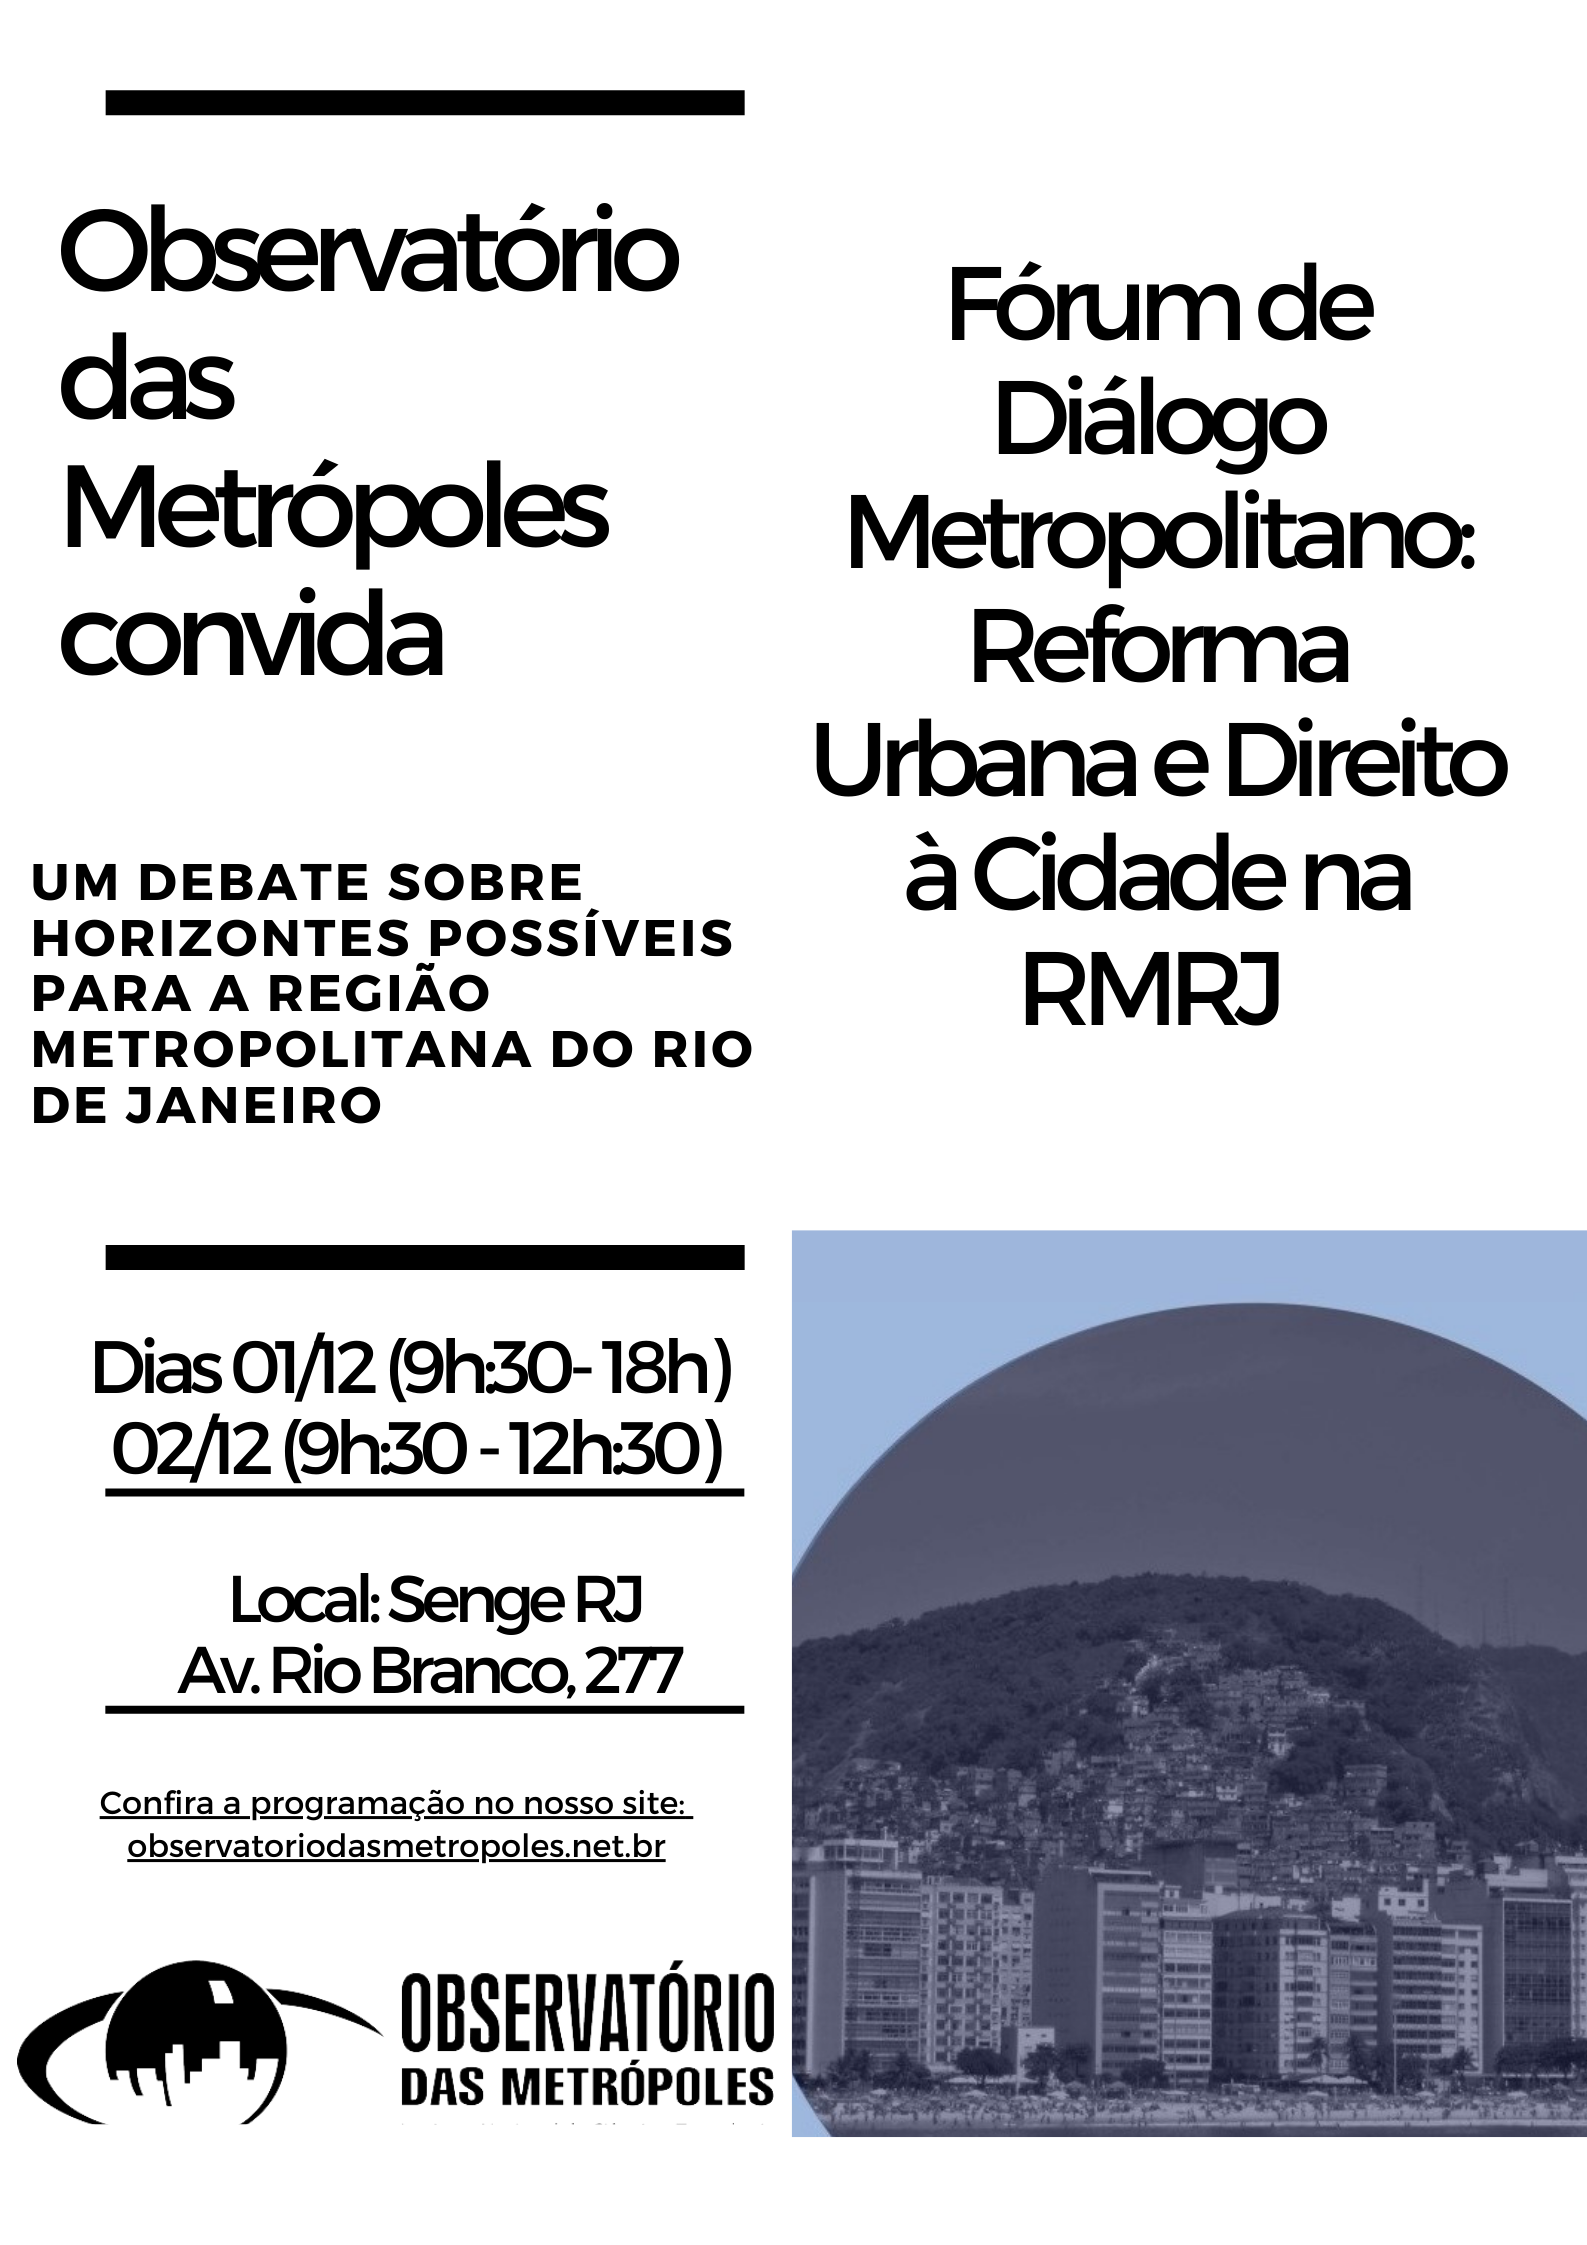 Fórum de Diálogo Metropolitano: Reforma Urbana e Direito à Cidade na RMRJ